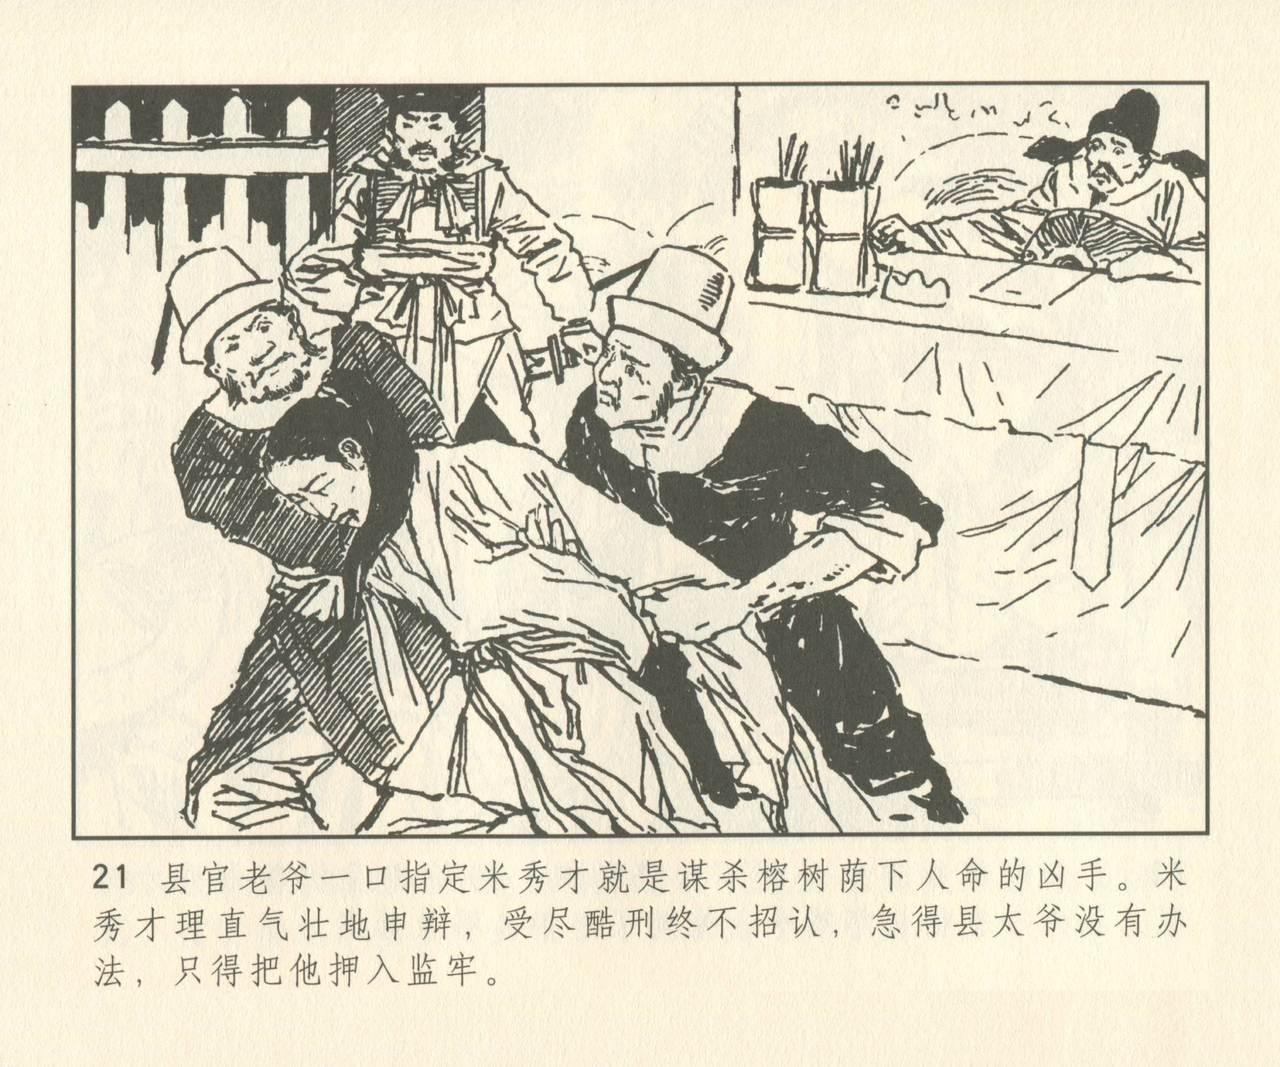 聊斋志异 张玮等绘 天津人民美术出版社 卷二十一 ~ 三十 149